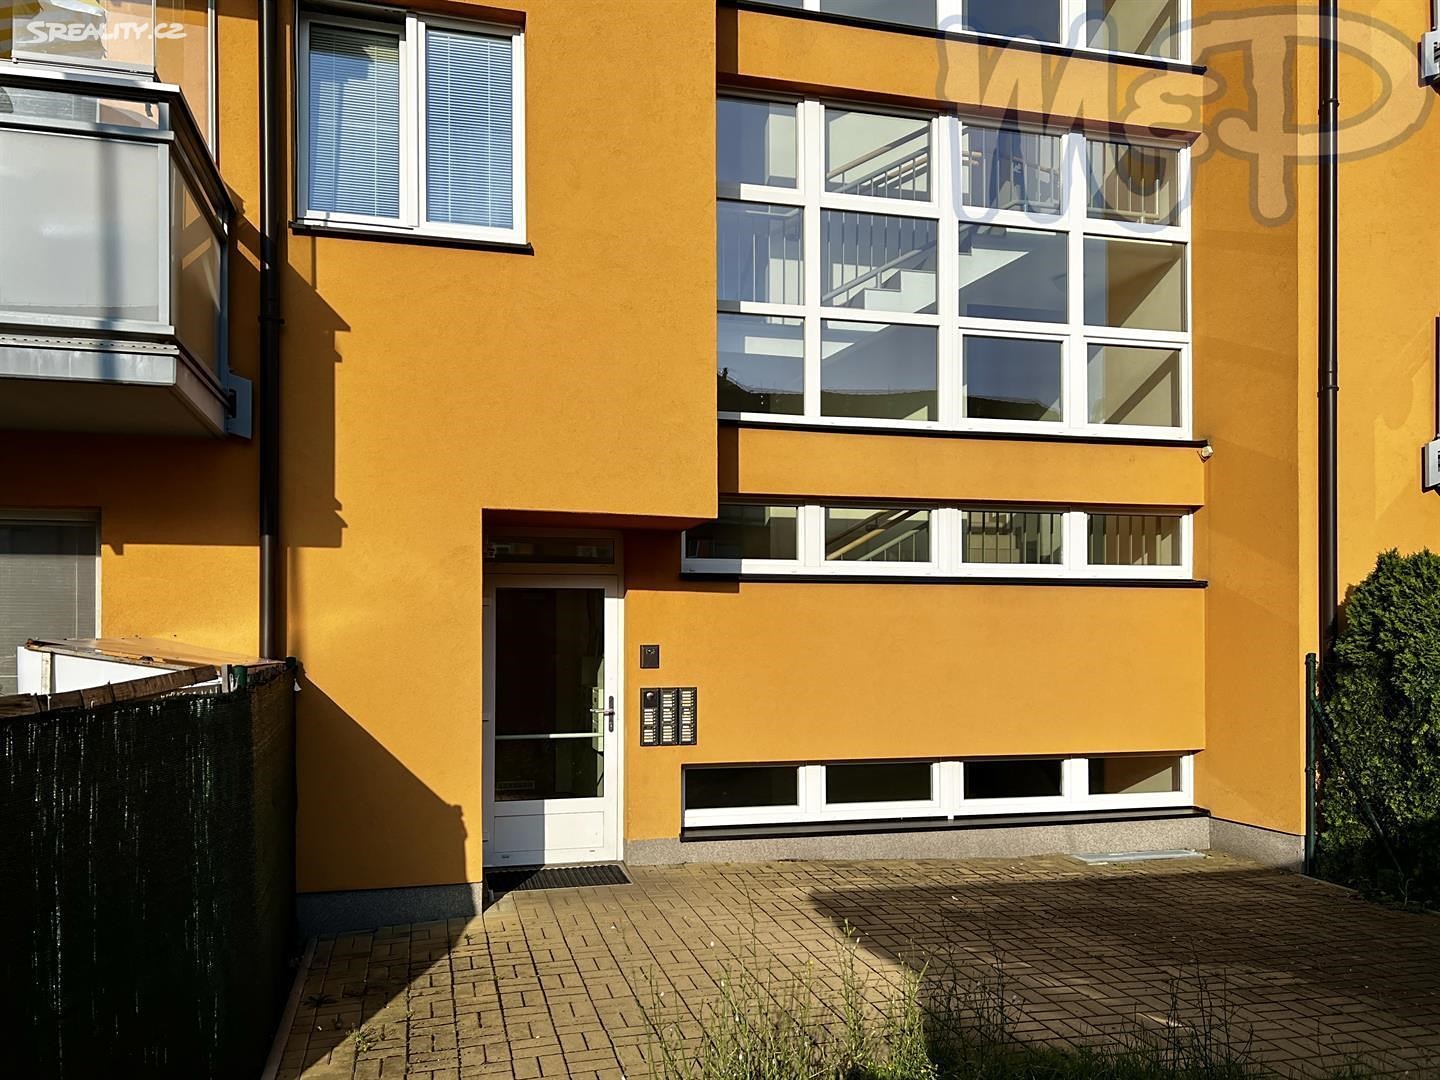 Prodej bytu 1+kk 29 m² (Podkrovní), Švihovská, Praha 4 - Písnice